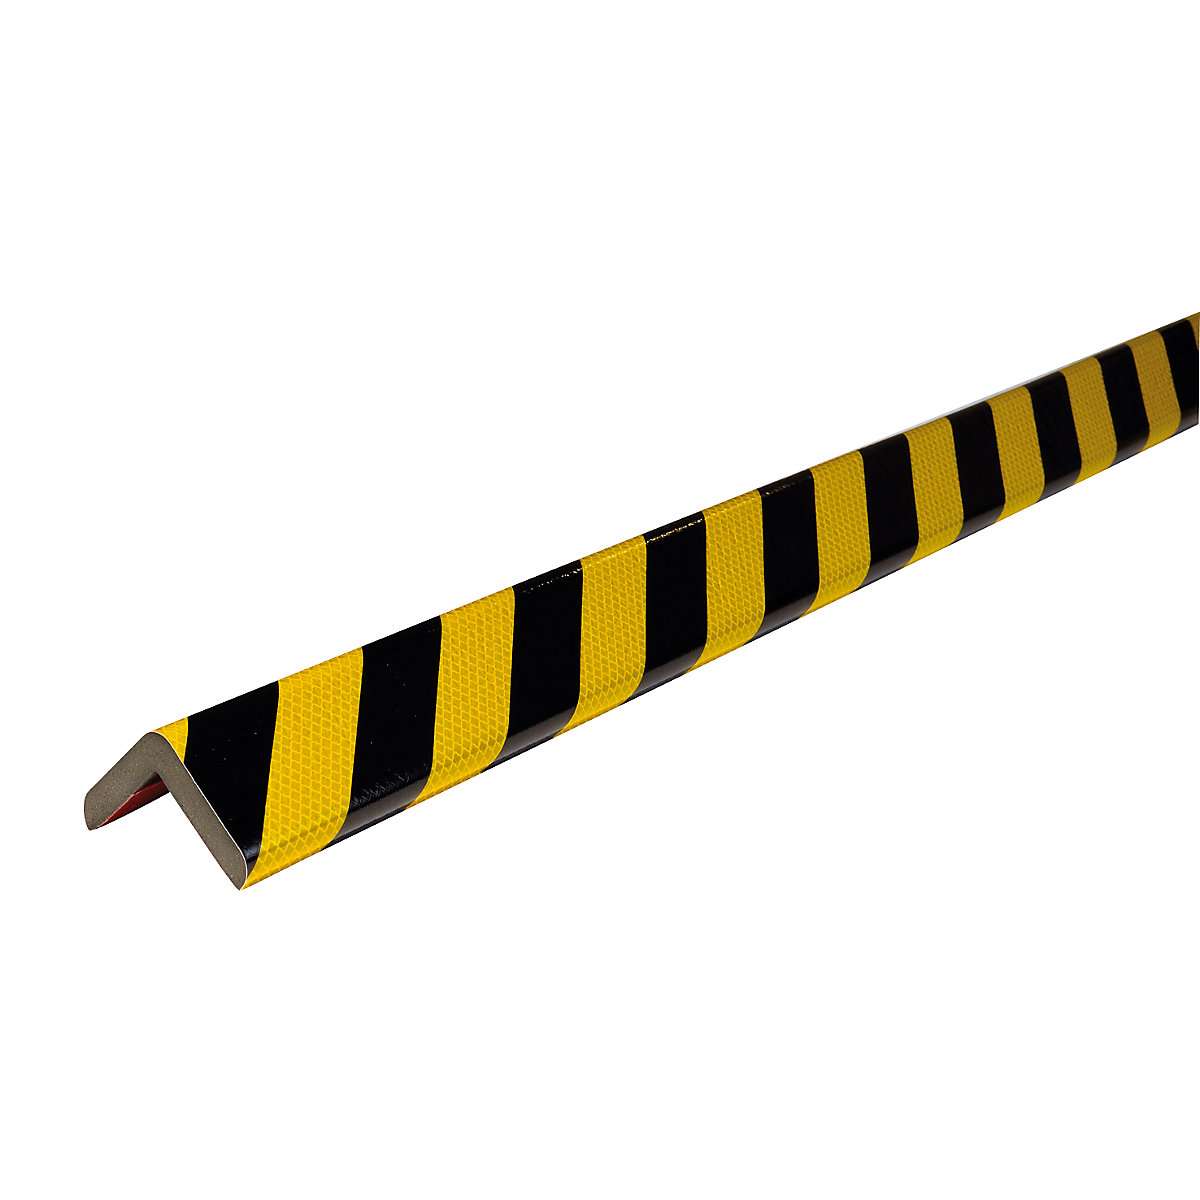 Proteção de cantos Knuffi® – SHG, tipo H+, unidade de 1 m, preto/amarelo, refletor-11